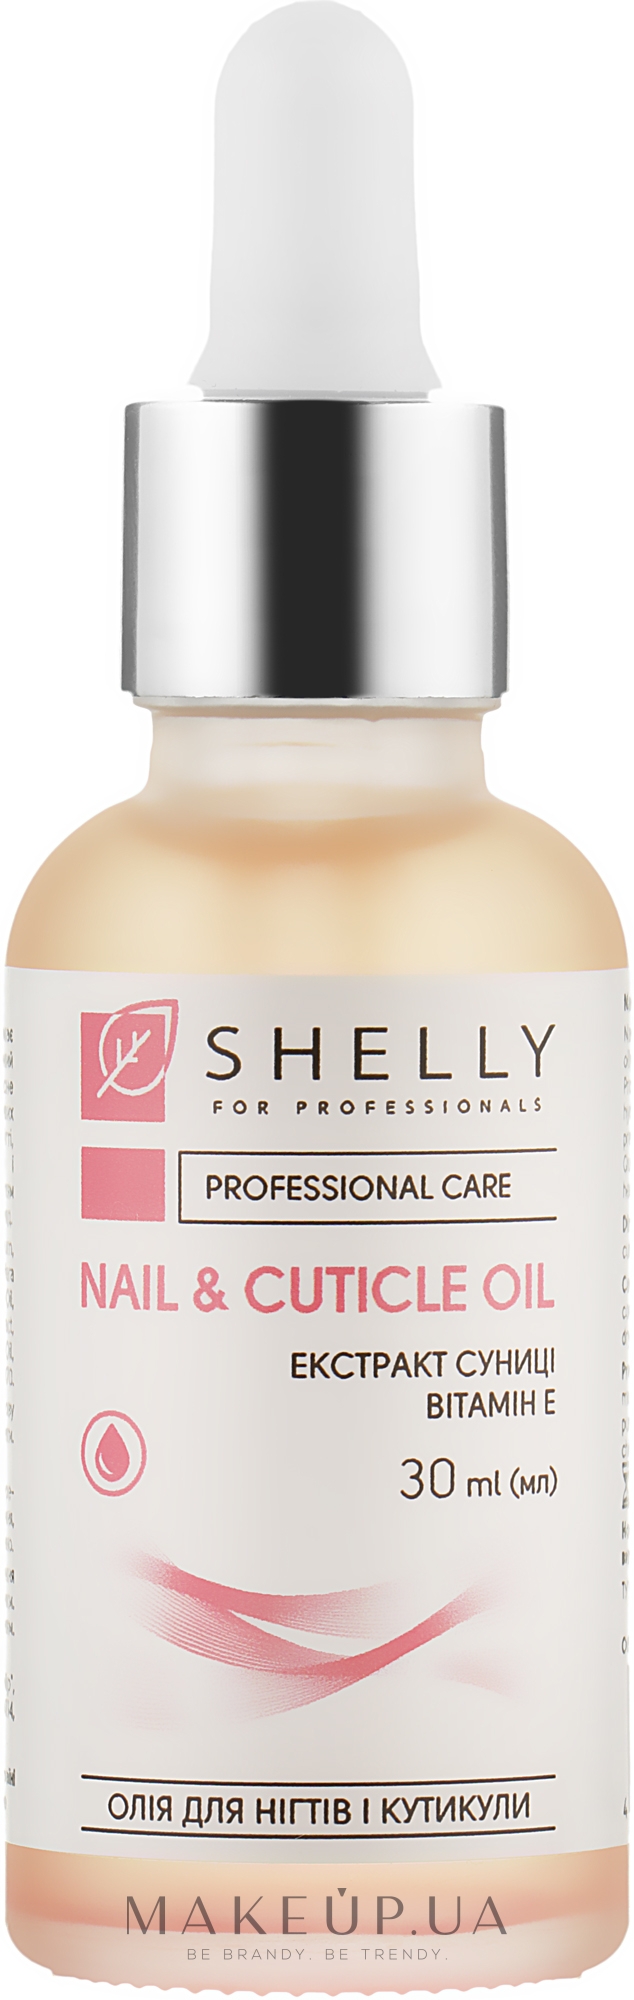 Олія для нігтів і кутикули з екстрактом суниці й вітаміном Е - Shelly Nail & Cuticle Oil — фото 30ml